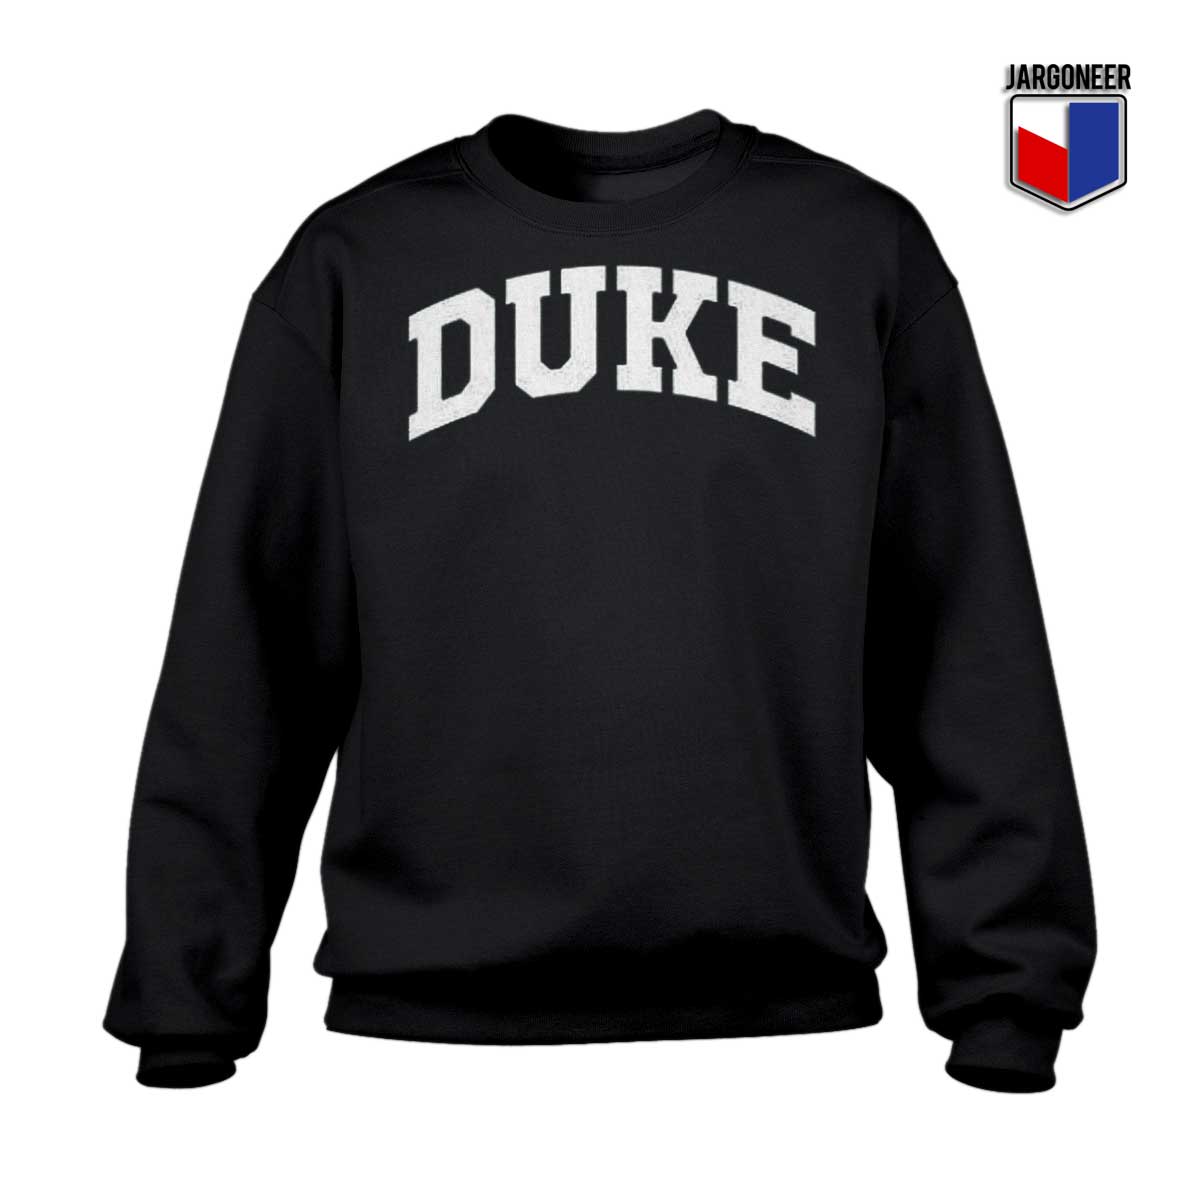 Buy Now Duke University Sweatshirt Unique Graphic Jargoneer